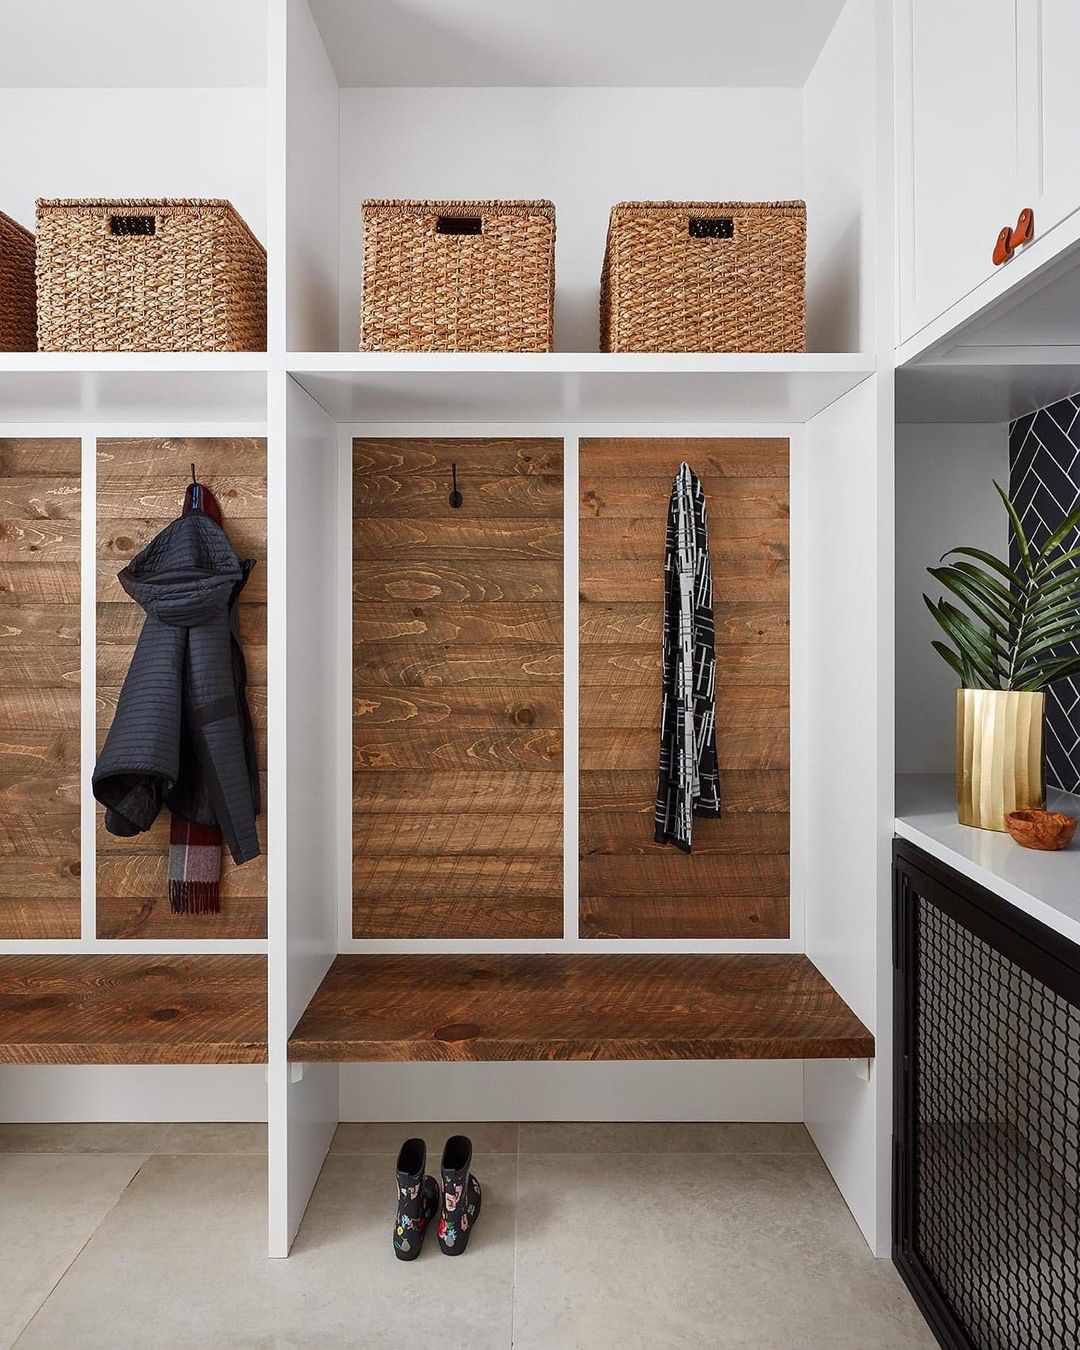 Eine Abstellkammer mit unterteilten Bereichen, die mit Holz im Used-Look akzentuiert sind, Kleiderständern und offenen Ablagefächern im oberen Bereich.